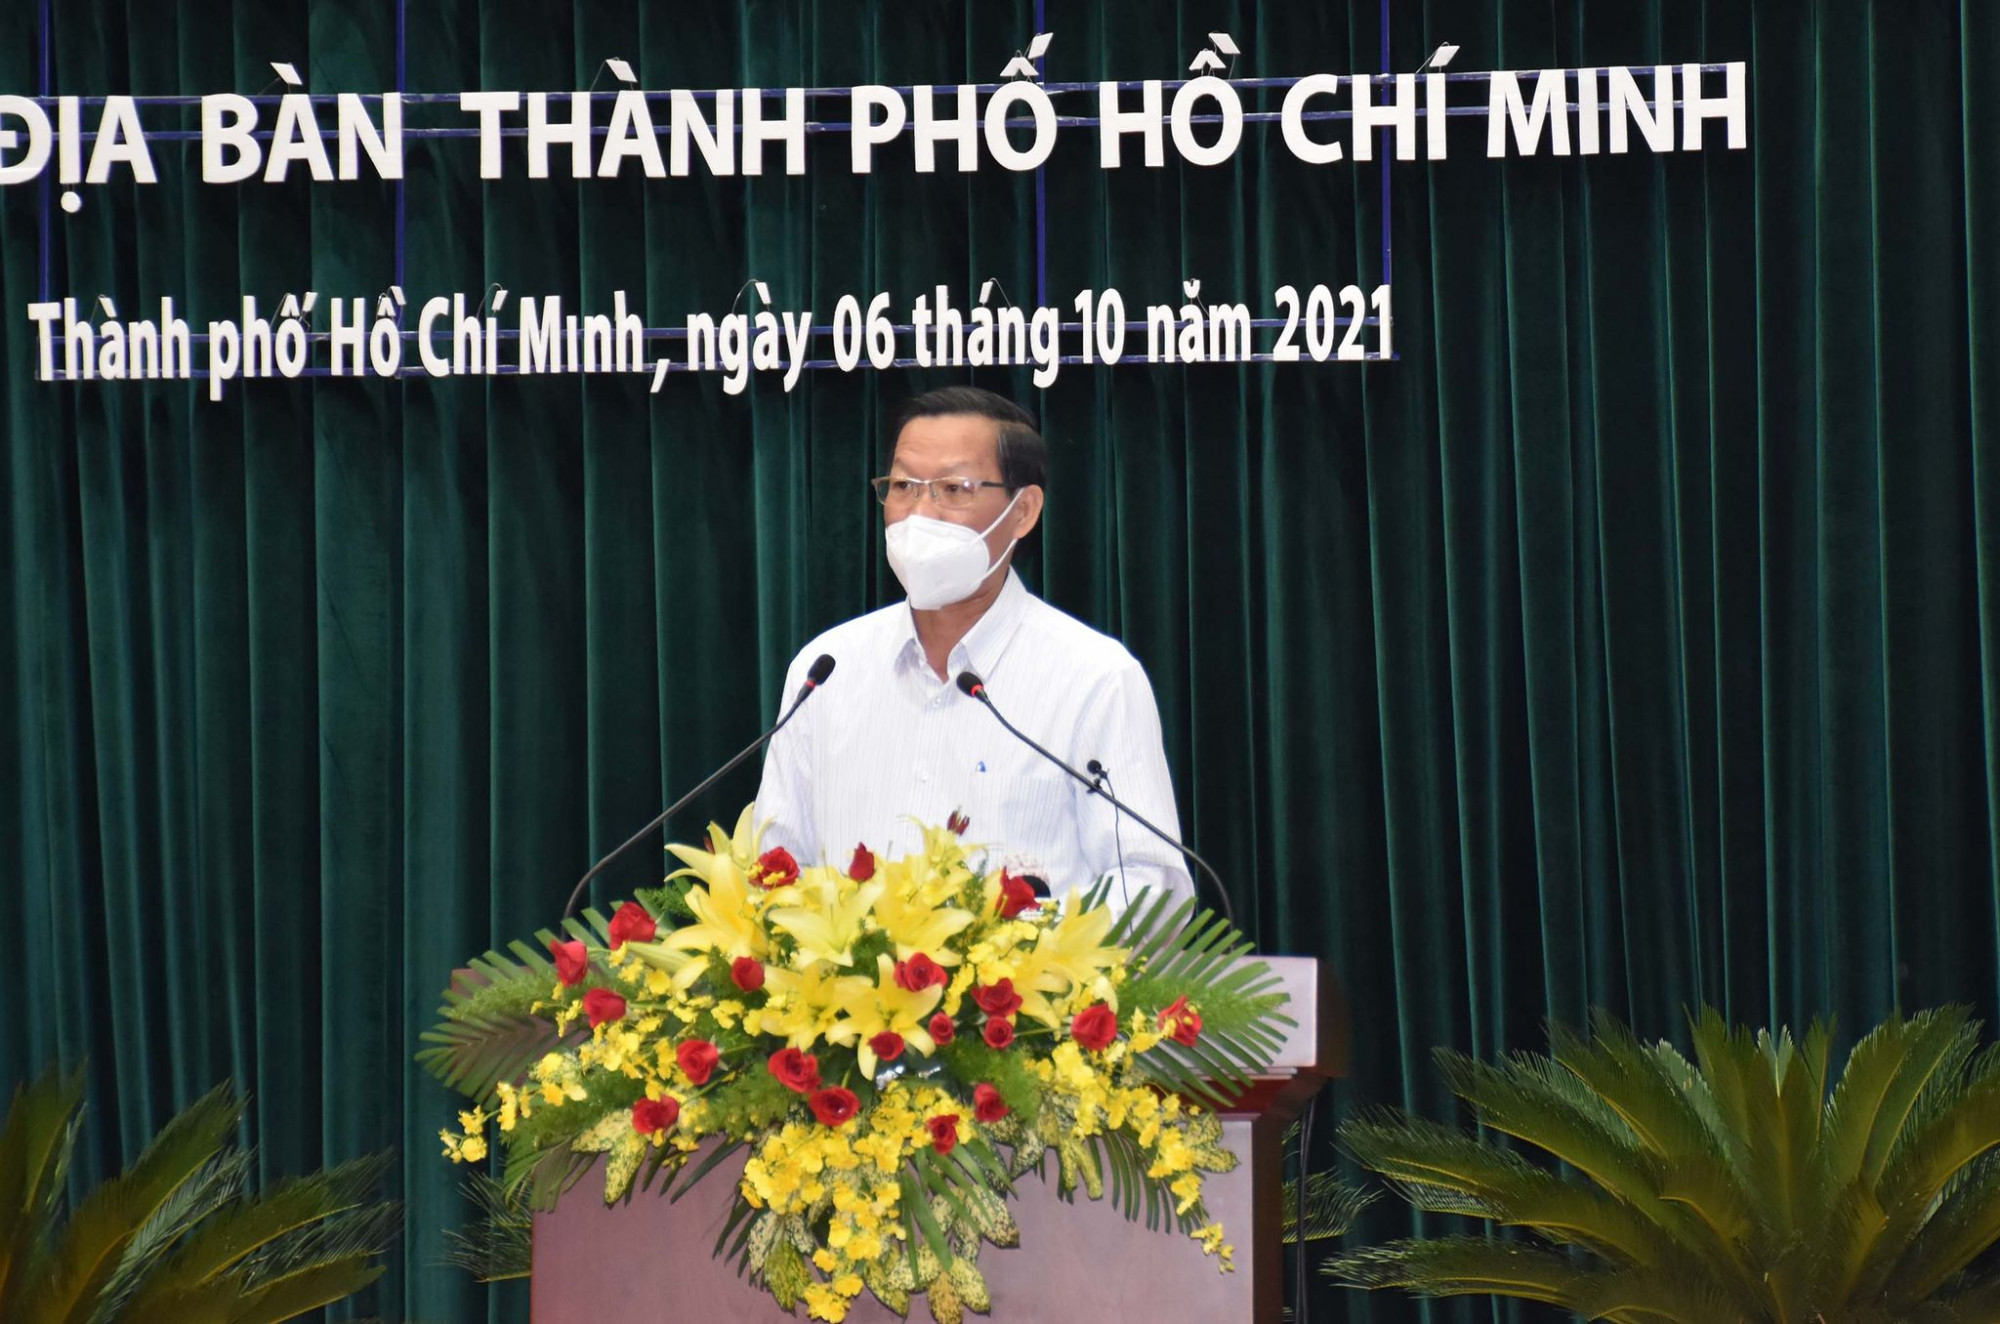  Chủ tịch TPHCM Phan Văn Mãi tin rằng, với sự chung sức đồng lòng, thành phố sẽ vượt qua khó khăn, kiểm soát dịch bệnh, trở lại cuộc sống bình thường